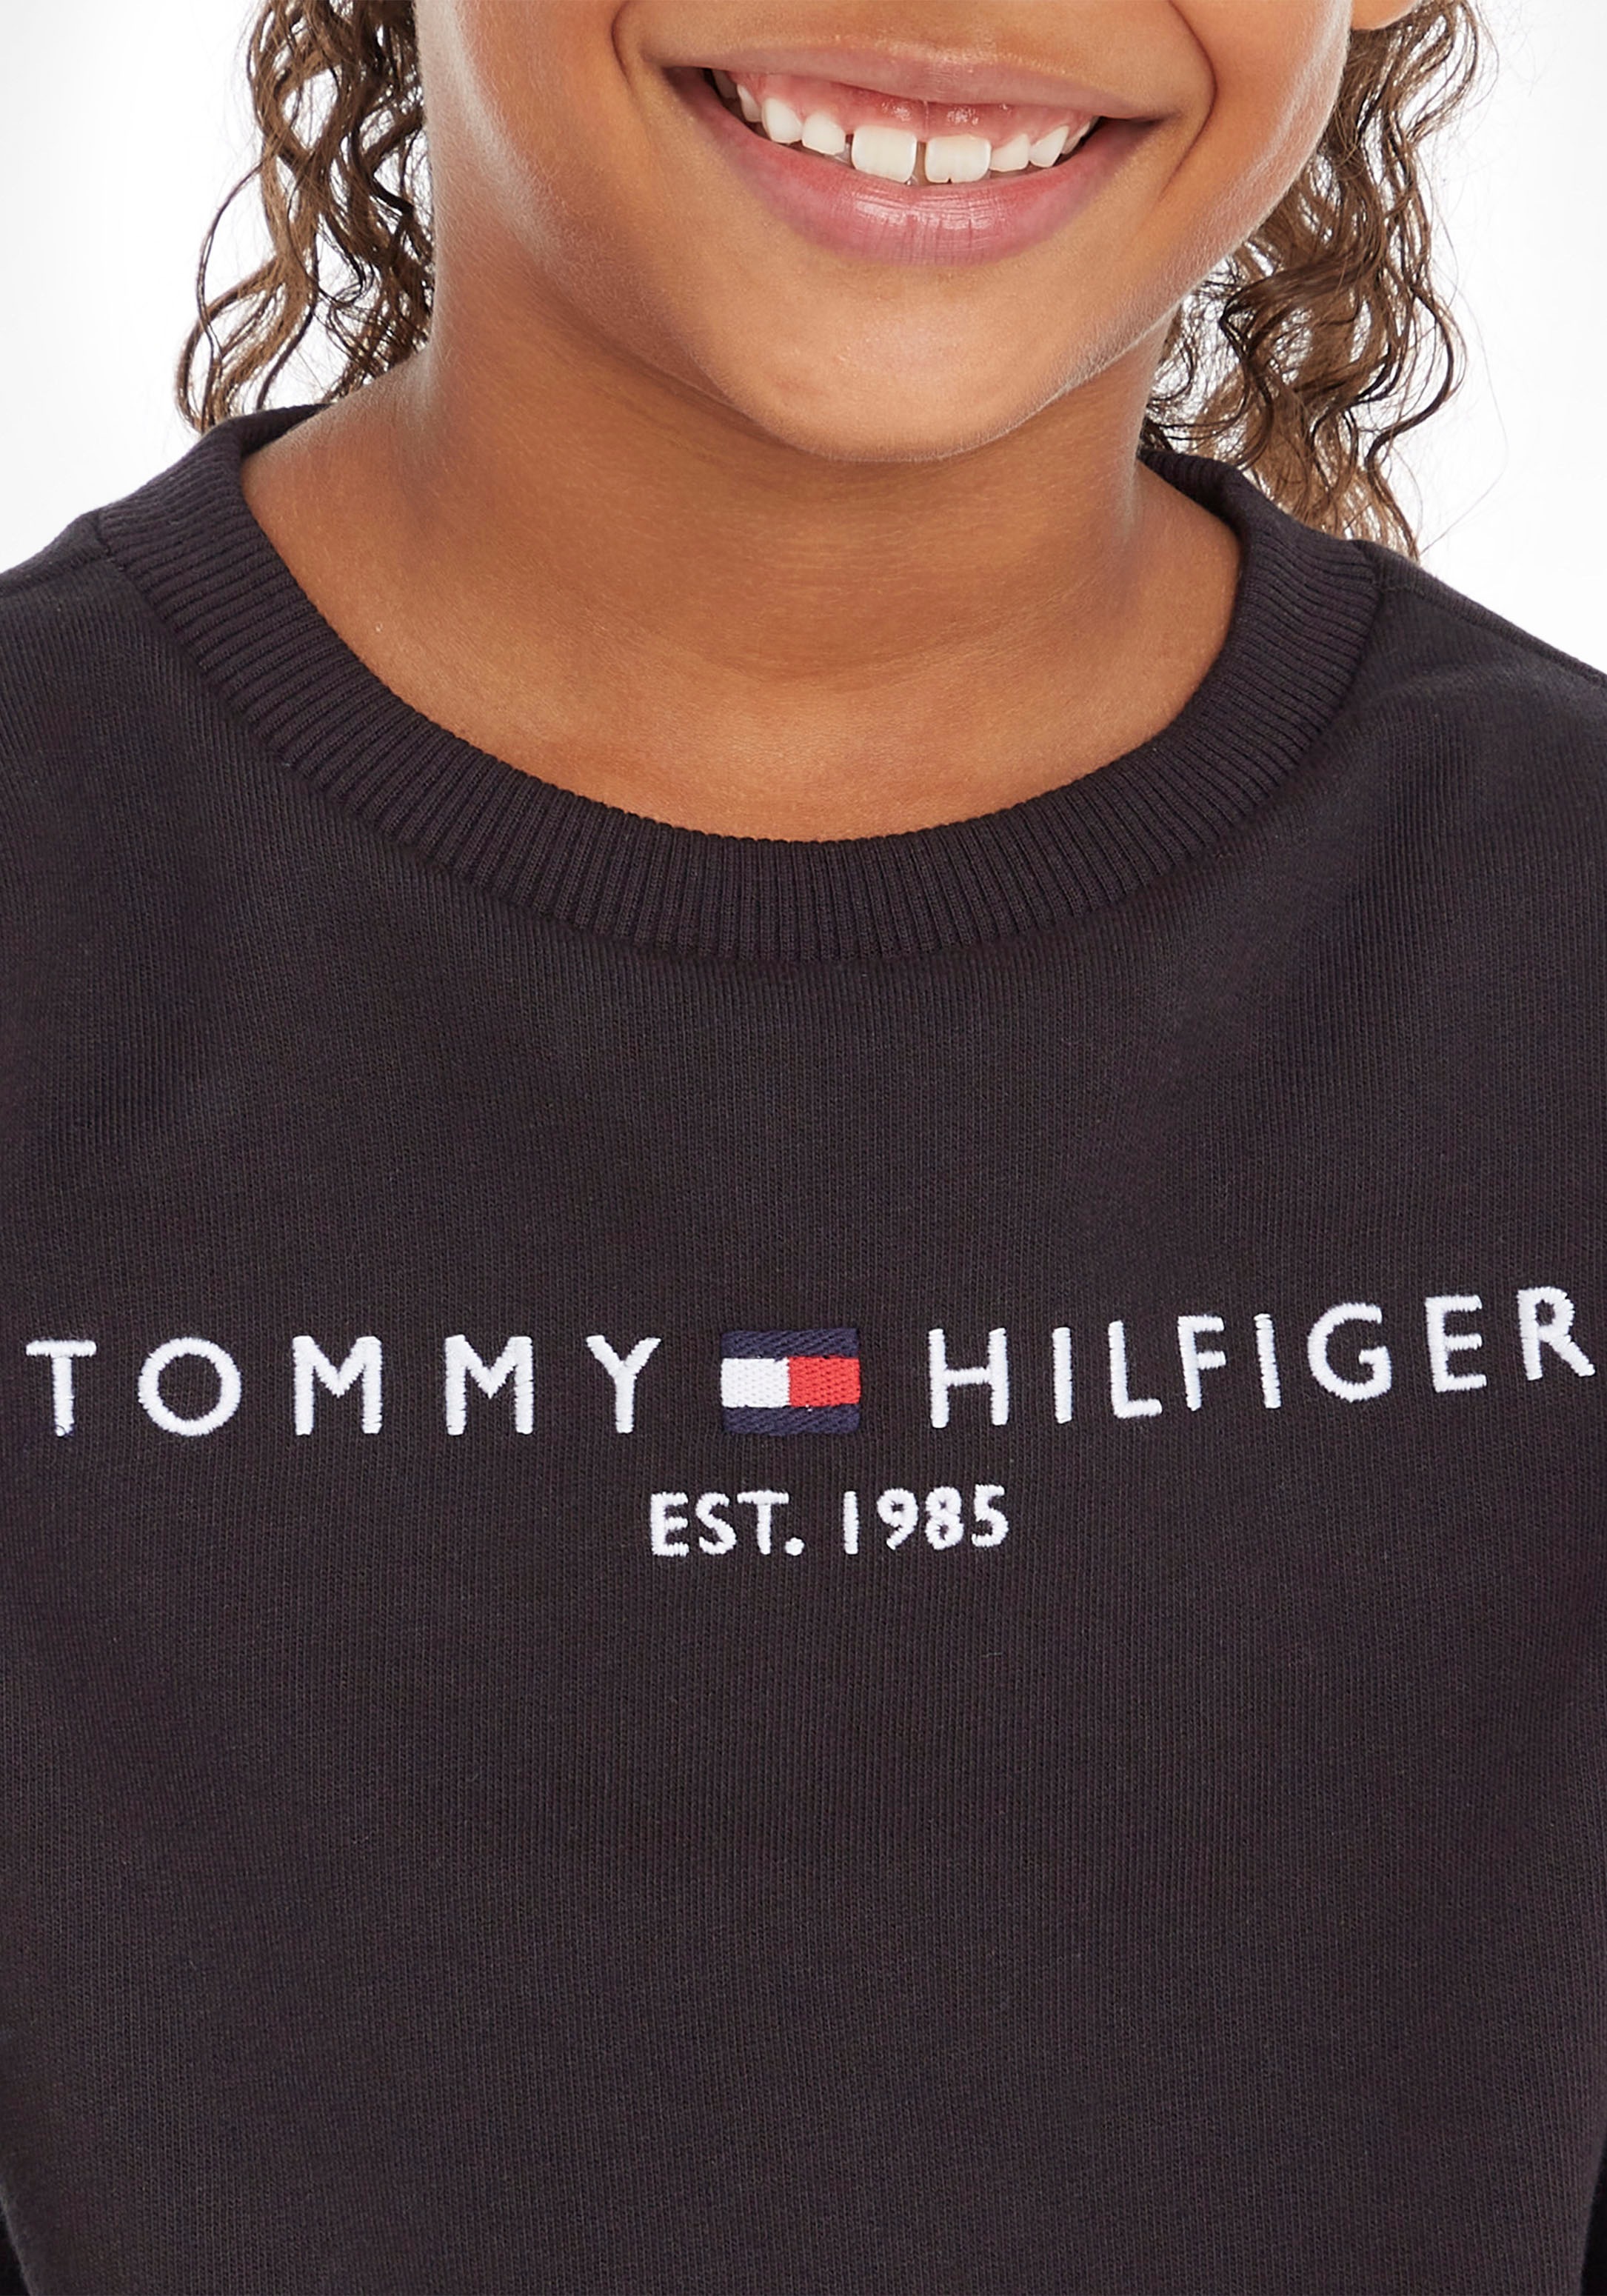 Tommy Hilfiger Sweatshirt »ESSENTIAL SWEATSHIRT«, Kinder Kids Junior MiniMe,für Jungen und Mädchen